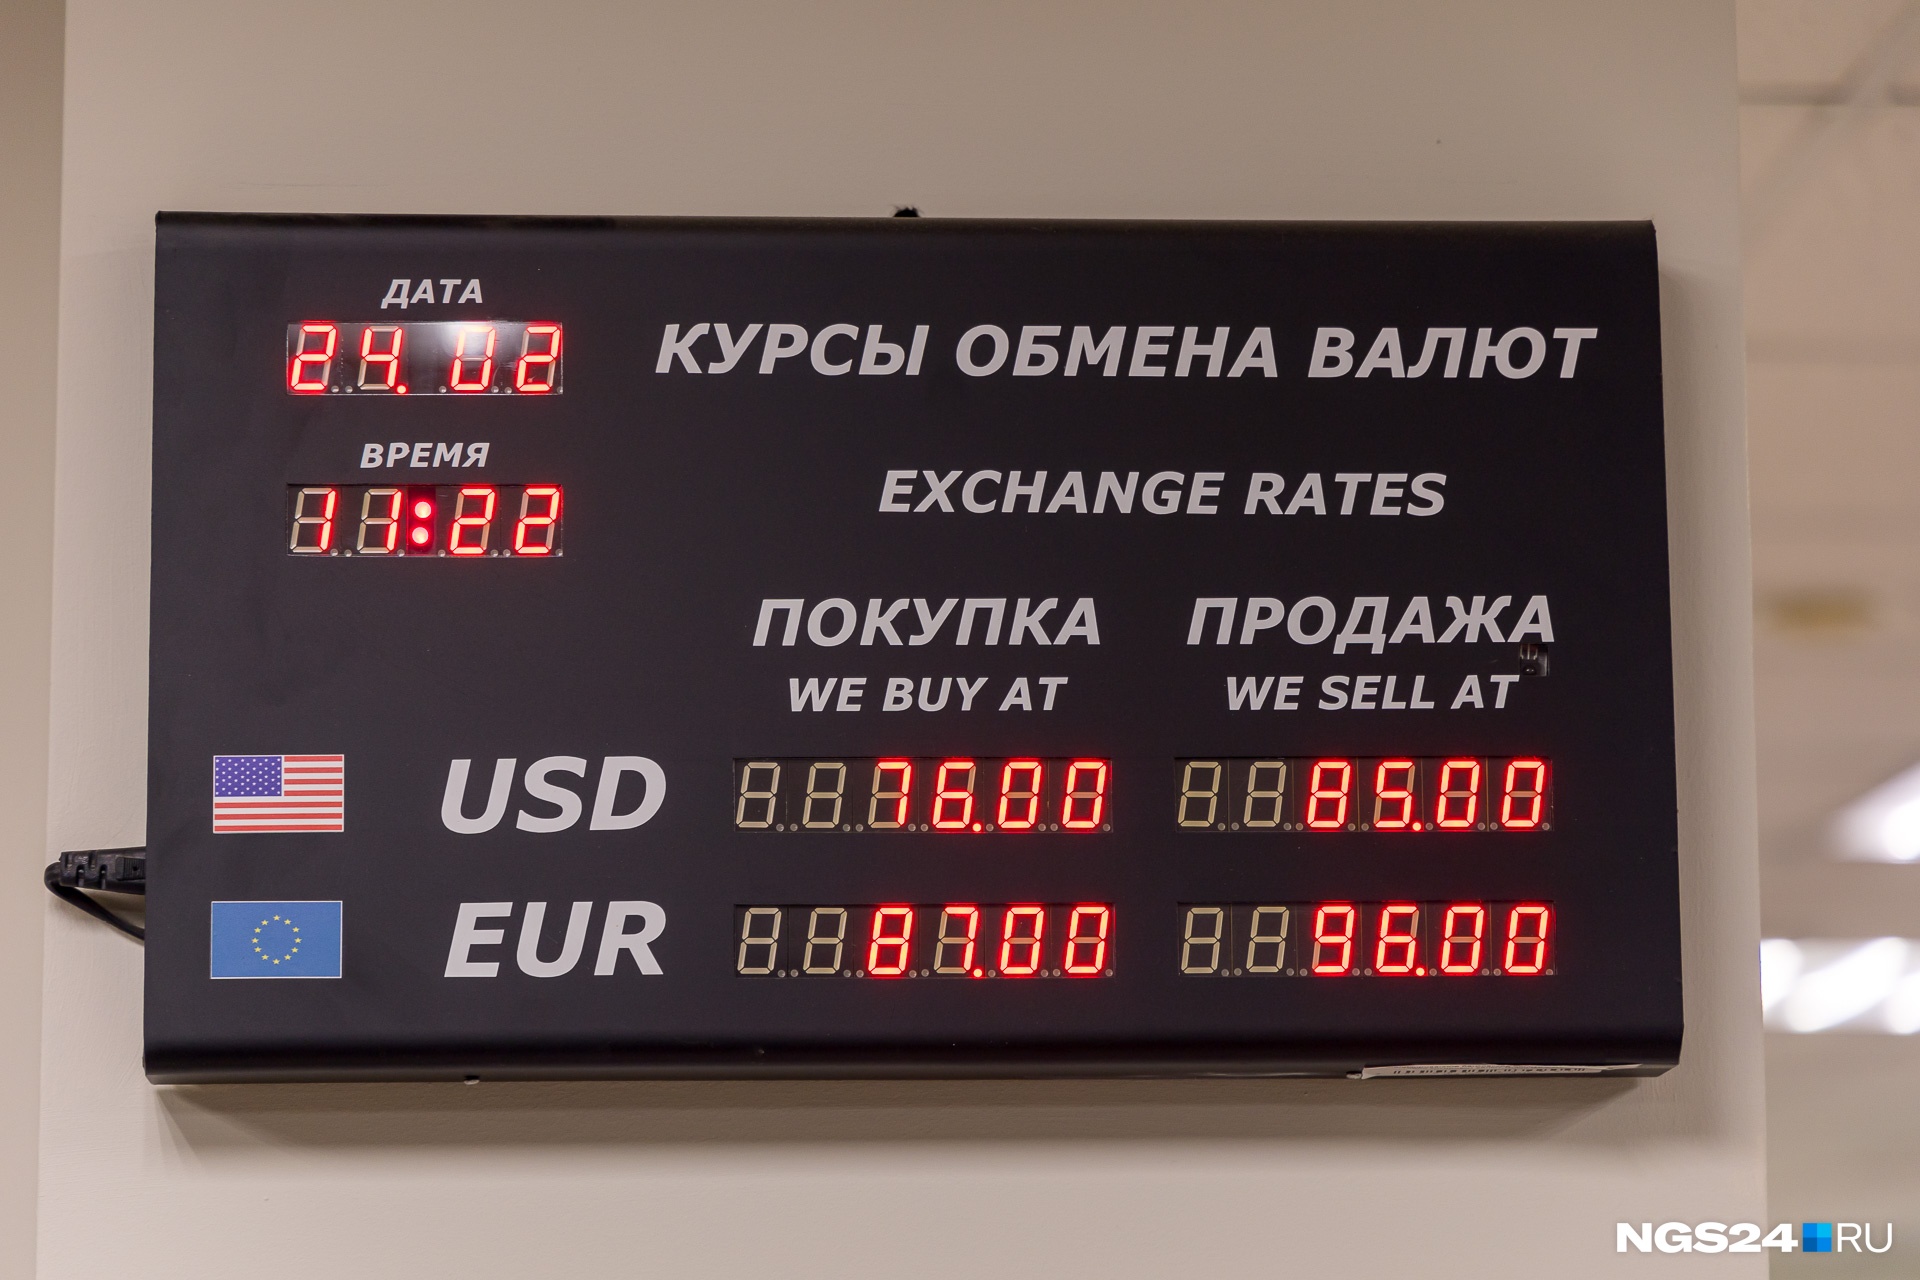 Купить доллар в банках красноярска сегодня. Обмен валюты. Обменник валют. Курс обмена валют. Обменные курсы валют.